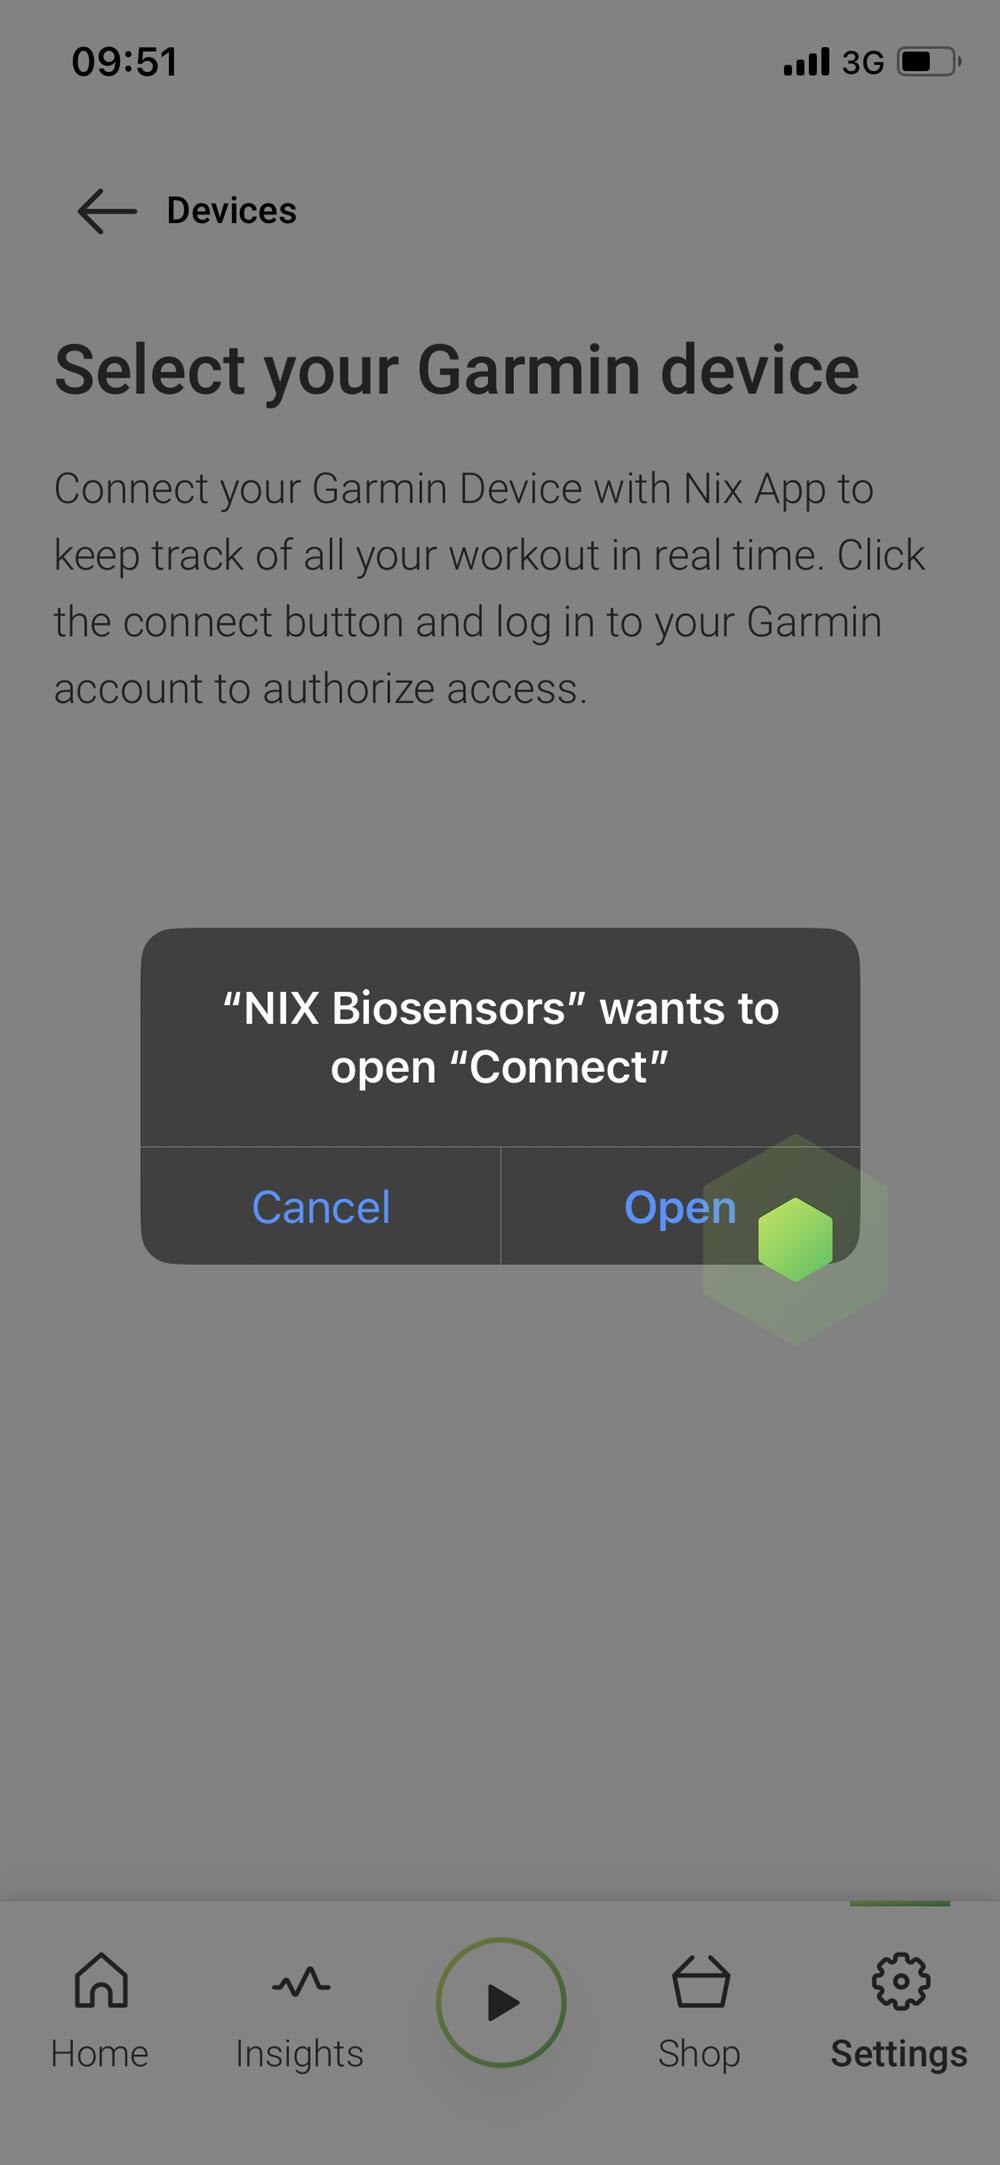 Nix Biosensors